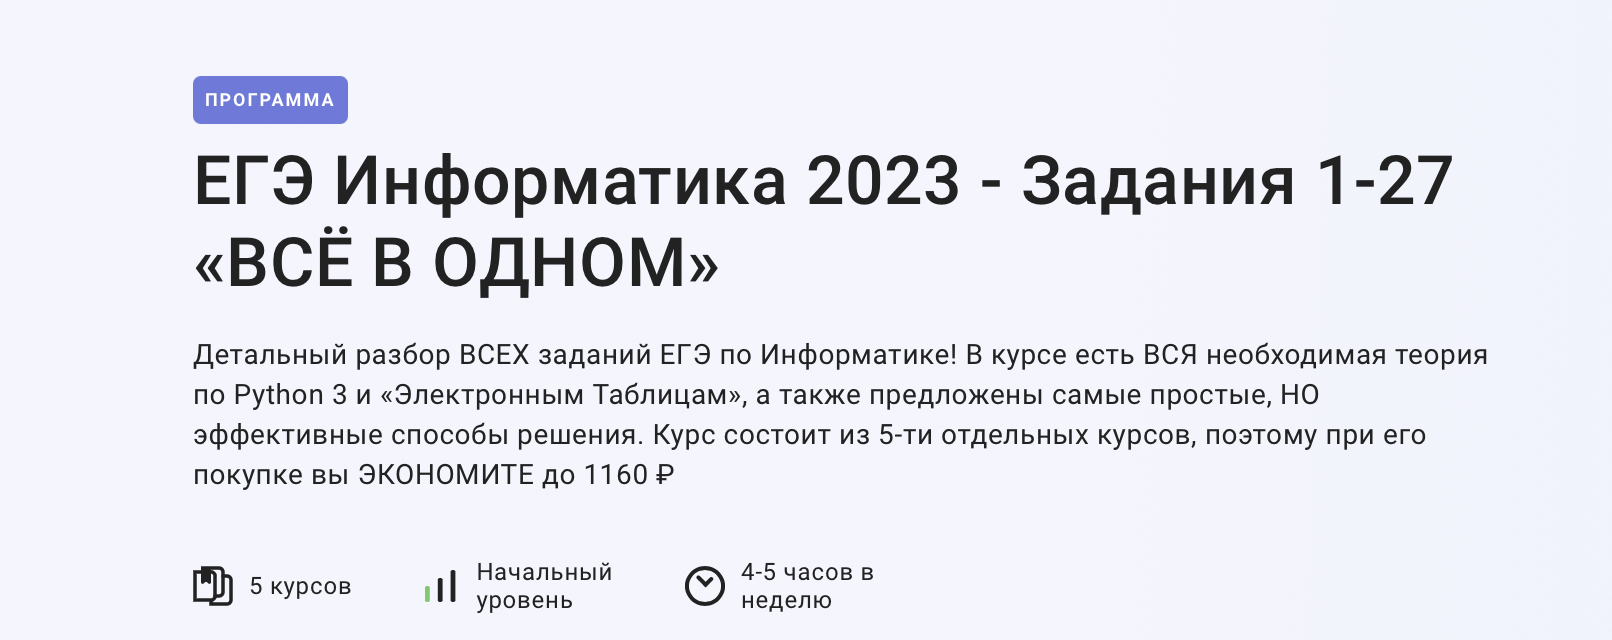 Егэ информатика 2023 решение. Задания ЕГЭ по информатике 2023. Изменения в ЕГЭ по информатике 2023. Продолжительность ЕГЭ по информатике 2023. 11 Задание ЕГЭ Информатика 2023.